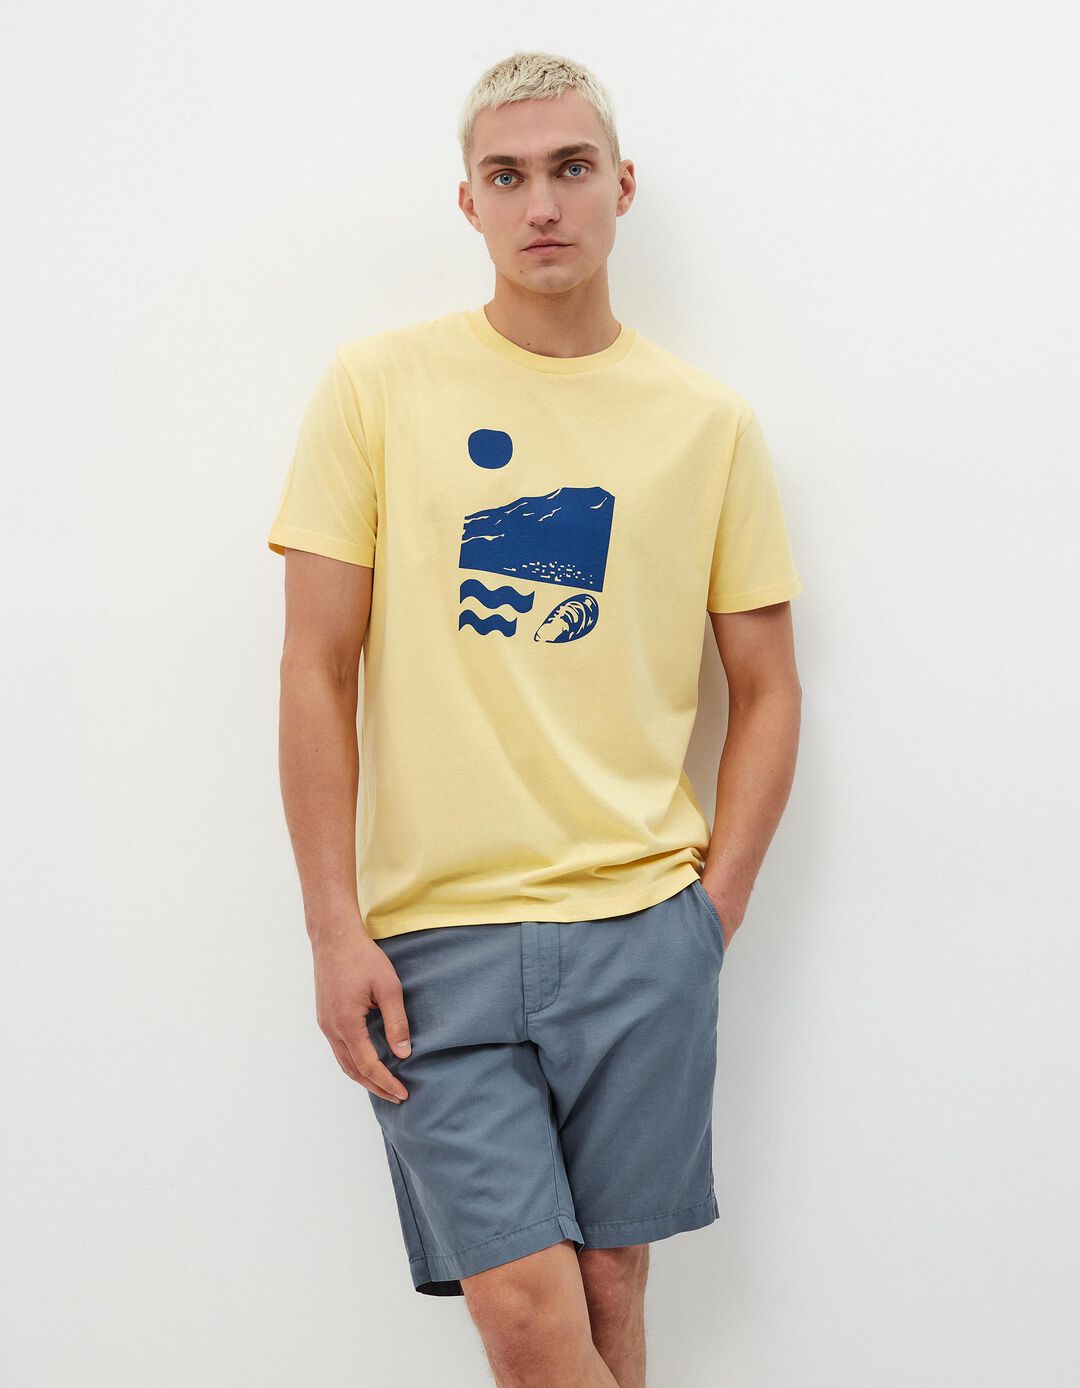 T-shirt Estampado, Homem, Amarelo Claro